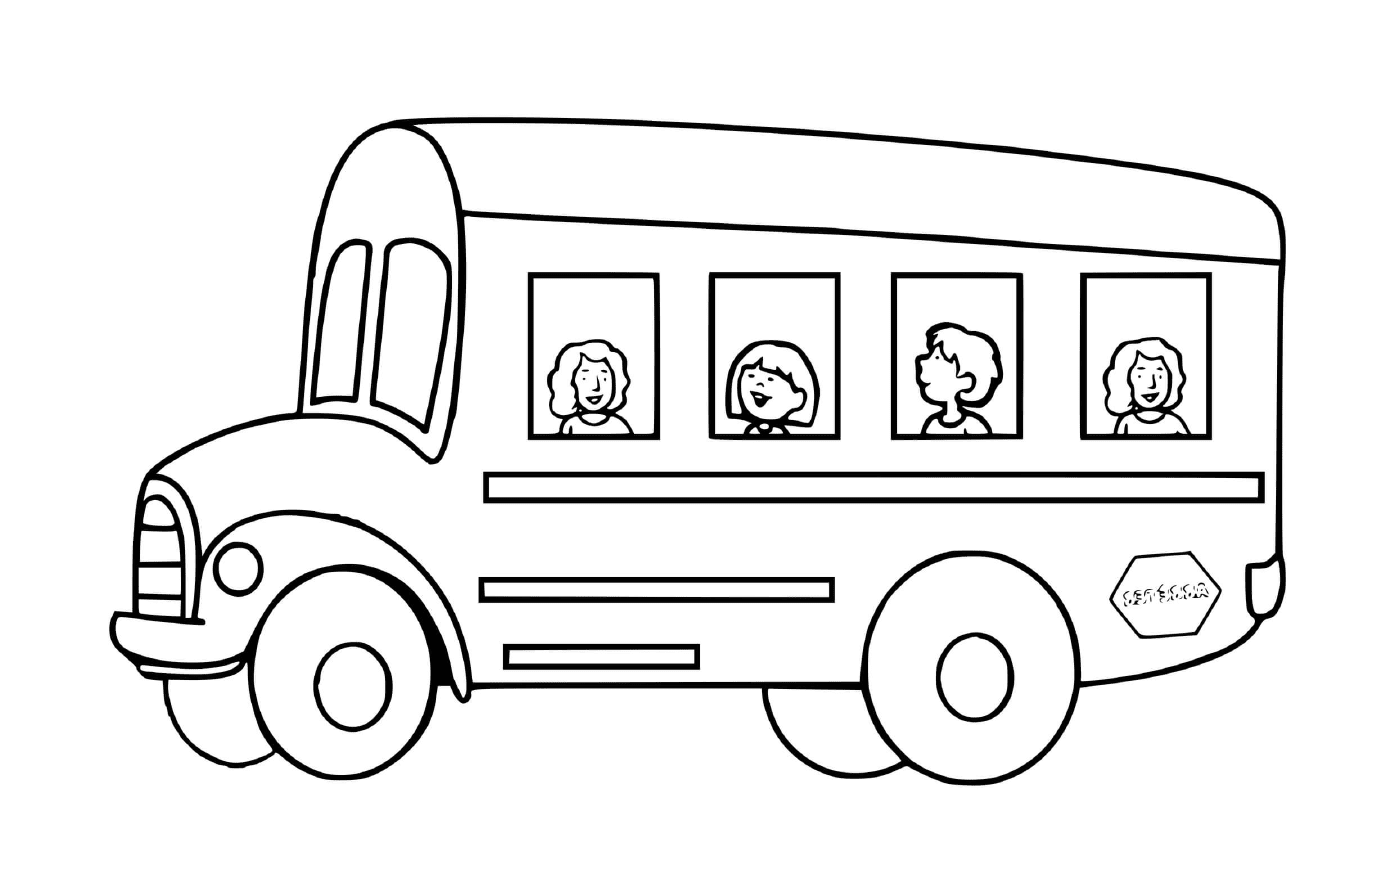  स्कूल में बच्चों के लिए परिवहन: बस 